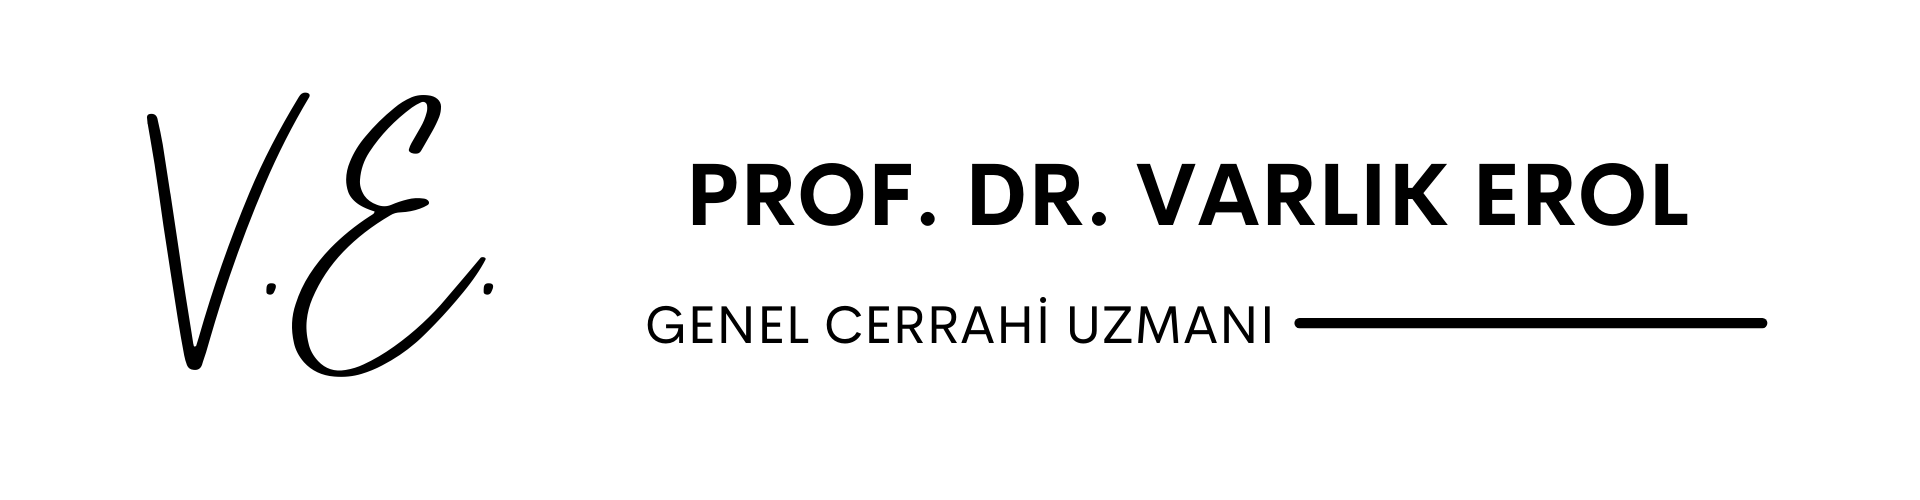 Prof. Dr.
Varlık Erol